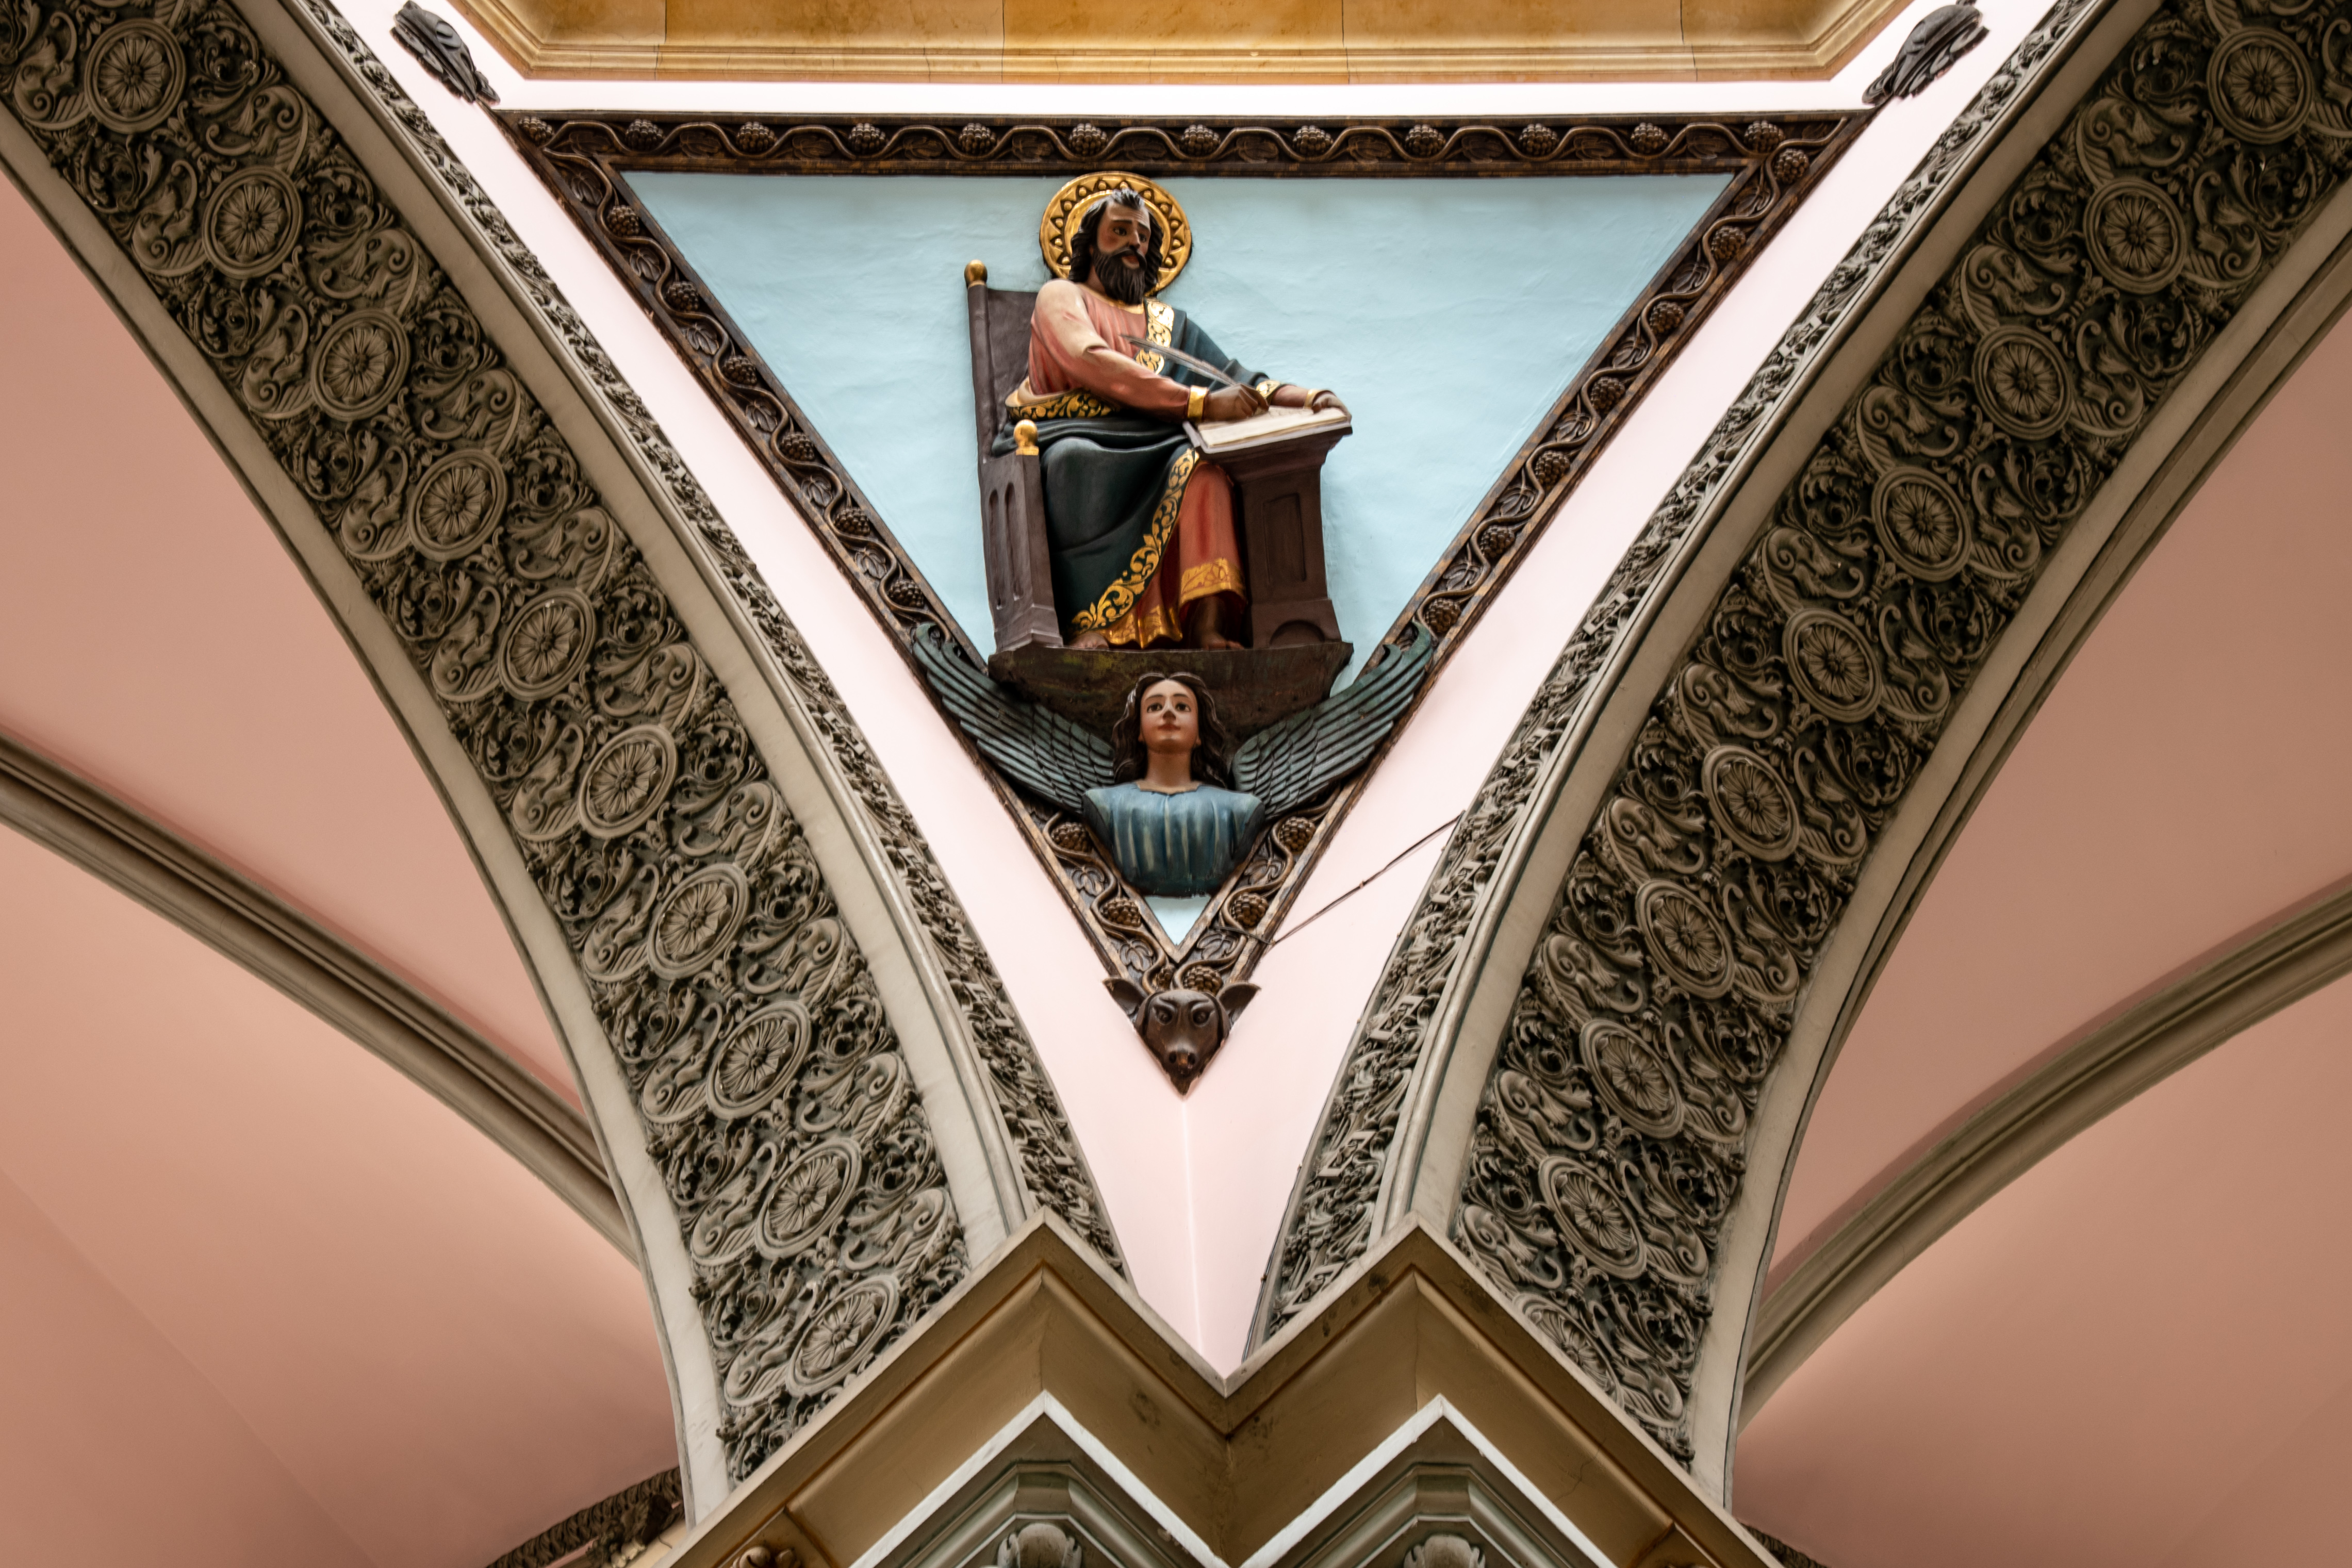 El salesiano italiano Giovanni Buscaglione dejó una bella obra en Colombia. Esta joya arquitectónica fusiona el neoclásico y el gótico. Foto: Diego Téllez